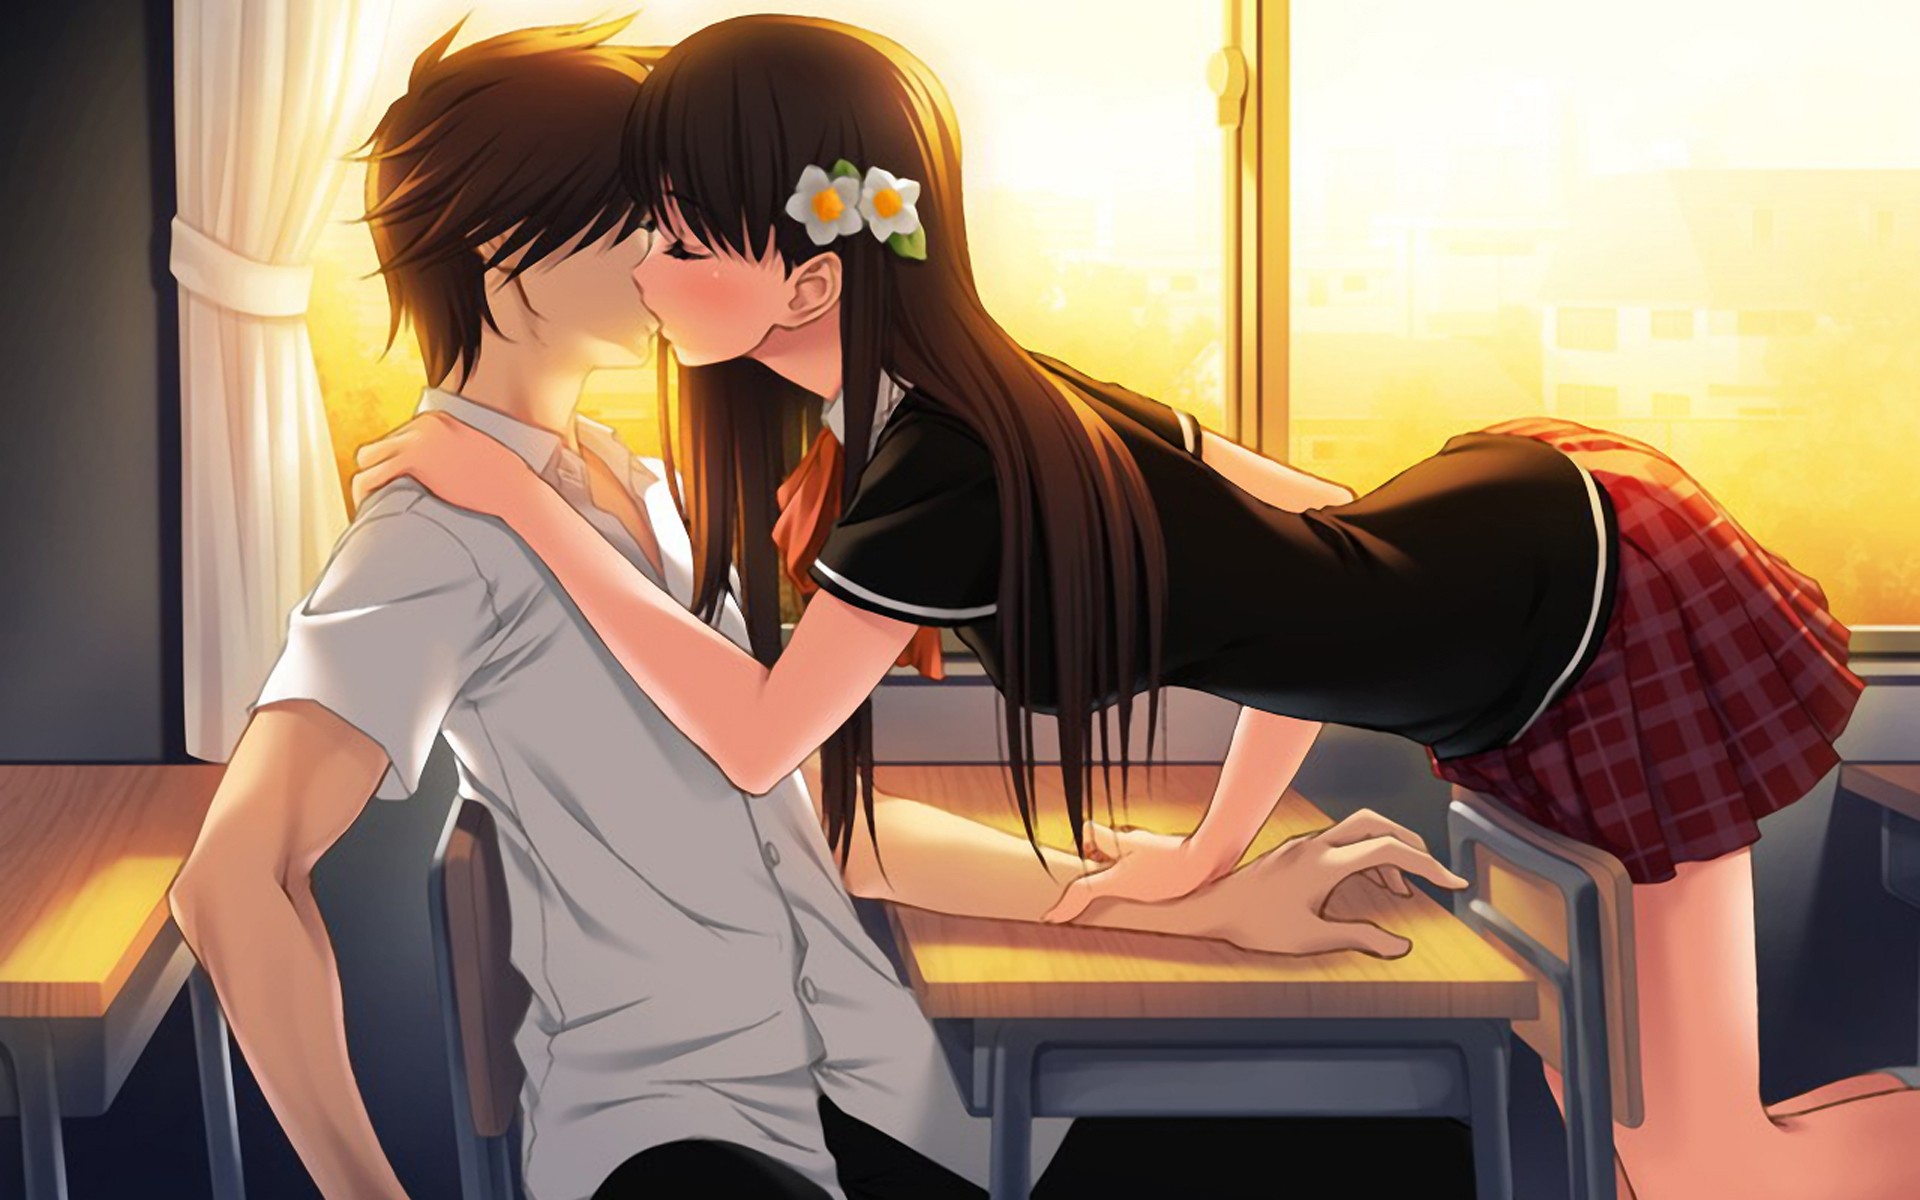 Anime 1920x1200 anime boys flower in hair anime girls kissing anime bent over miniskirt